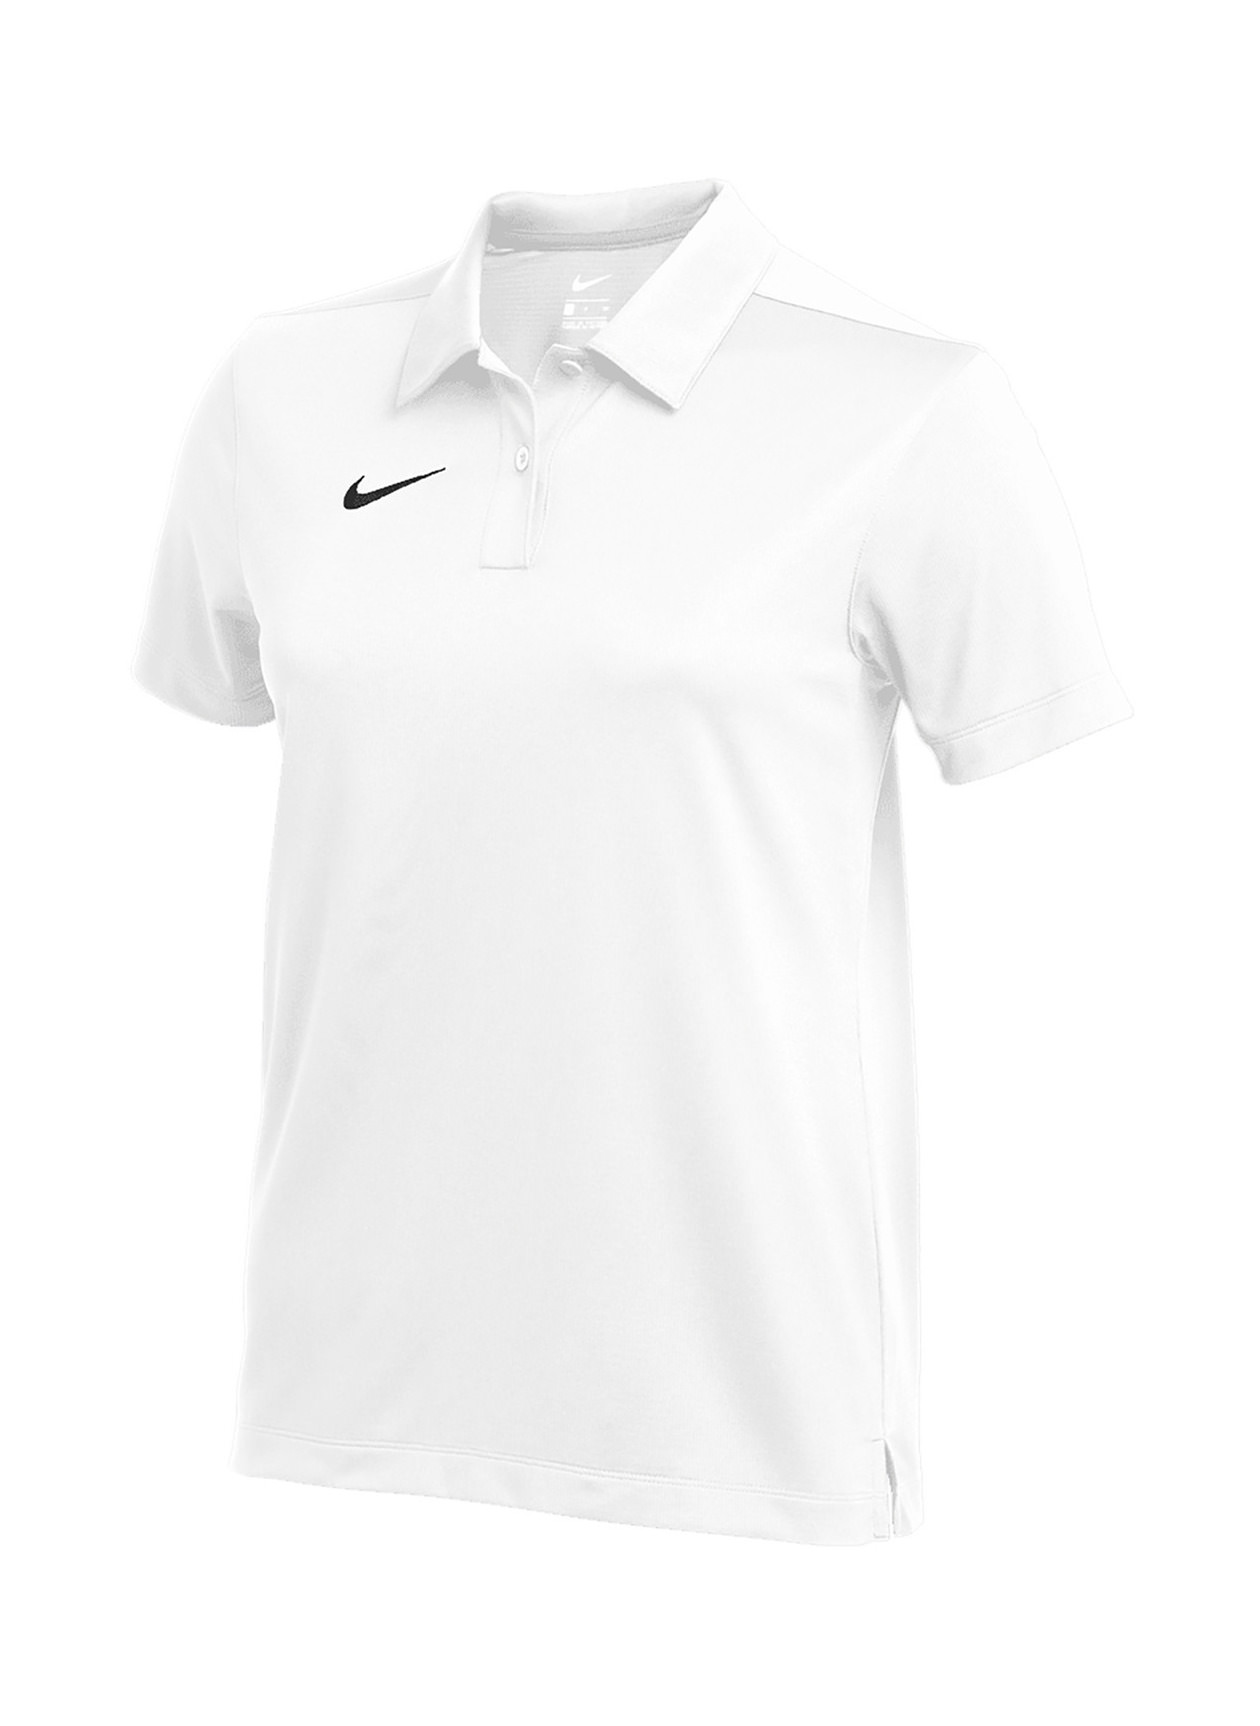 Nike Women's White Dri-FIT Franchise Polo